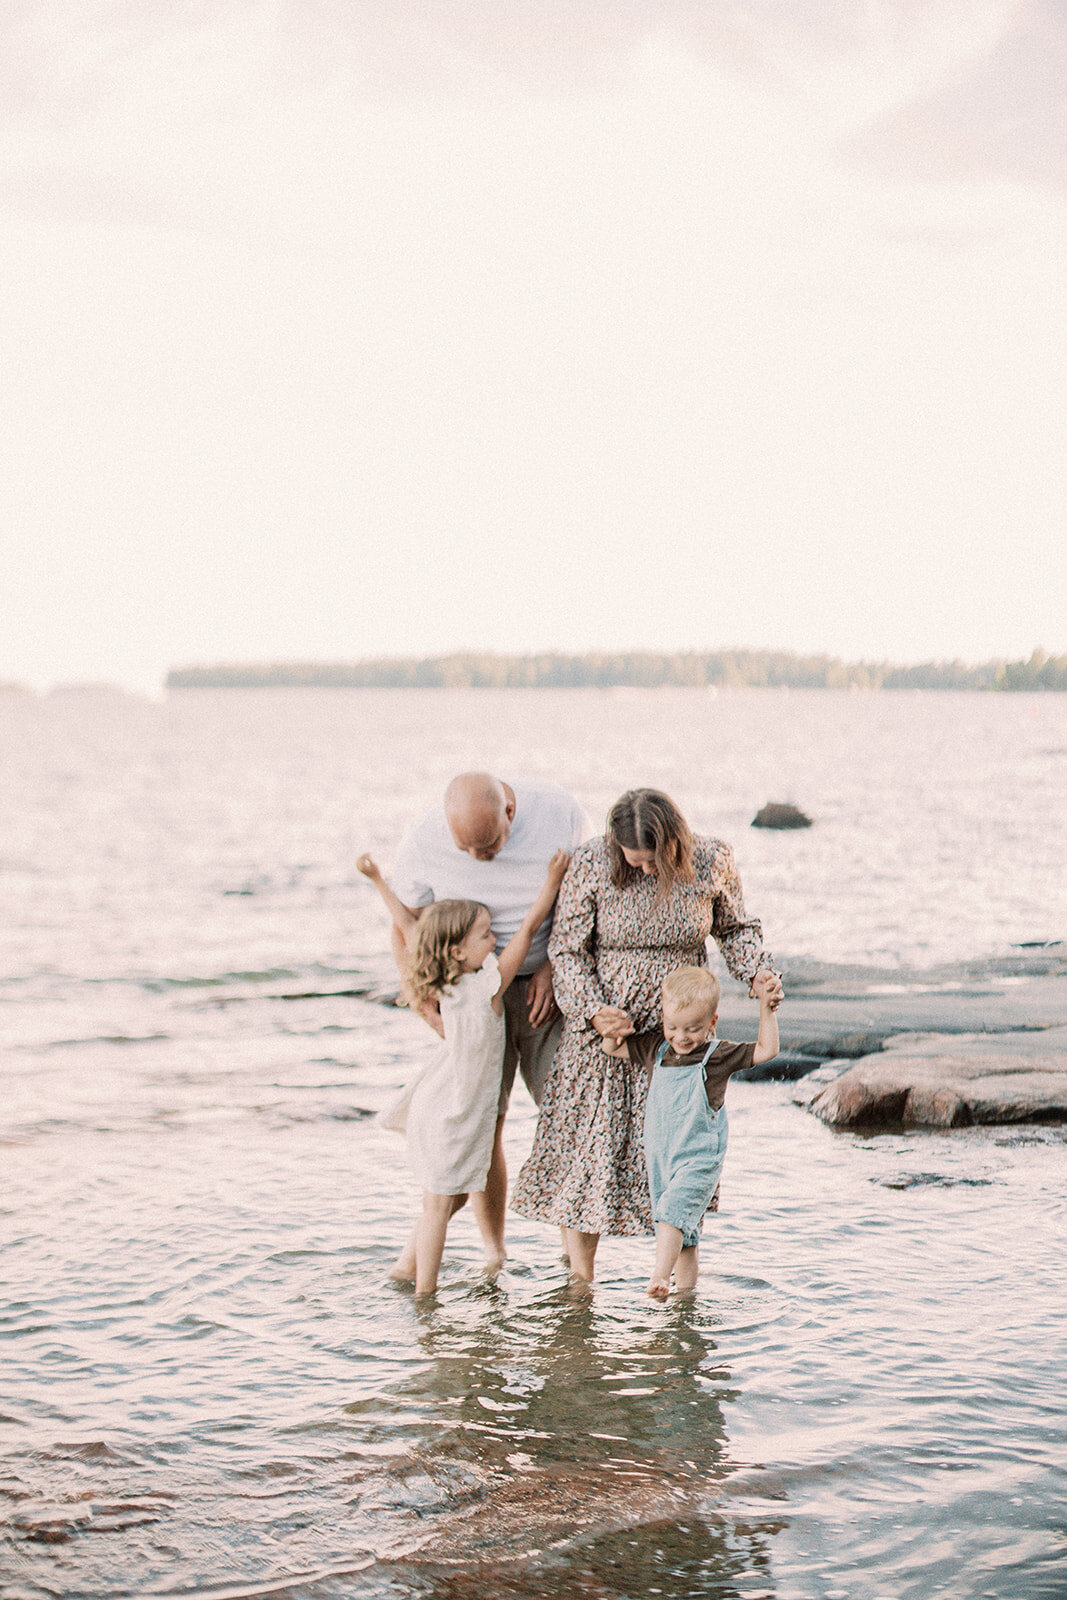 Perhekuvaus, lapsikuvaus, Haukilahden ranta, perhekuvaaja, lapsikuvaaja, Nord Stories, Susanna Nordvall, Espoo, Helsinki, valokuvaus (36)